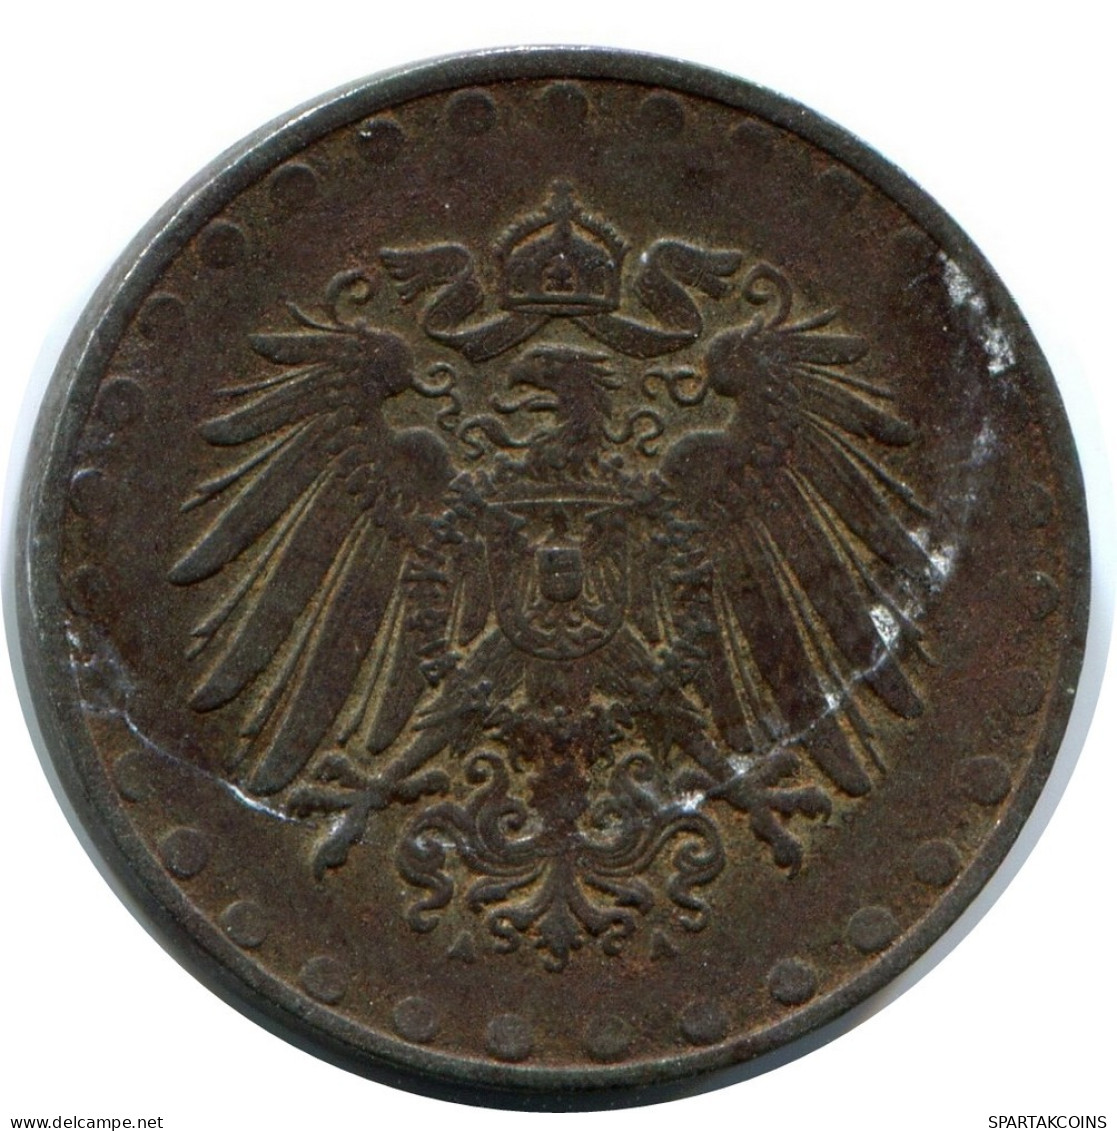 10 PFENNIG 1916 A ALEMANIA Moneda GERMANY #AW970.E.A - 10 Pfennig